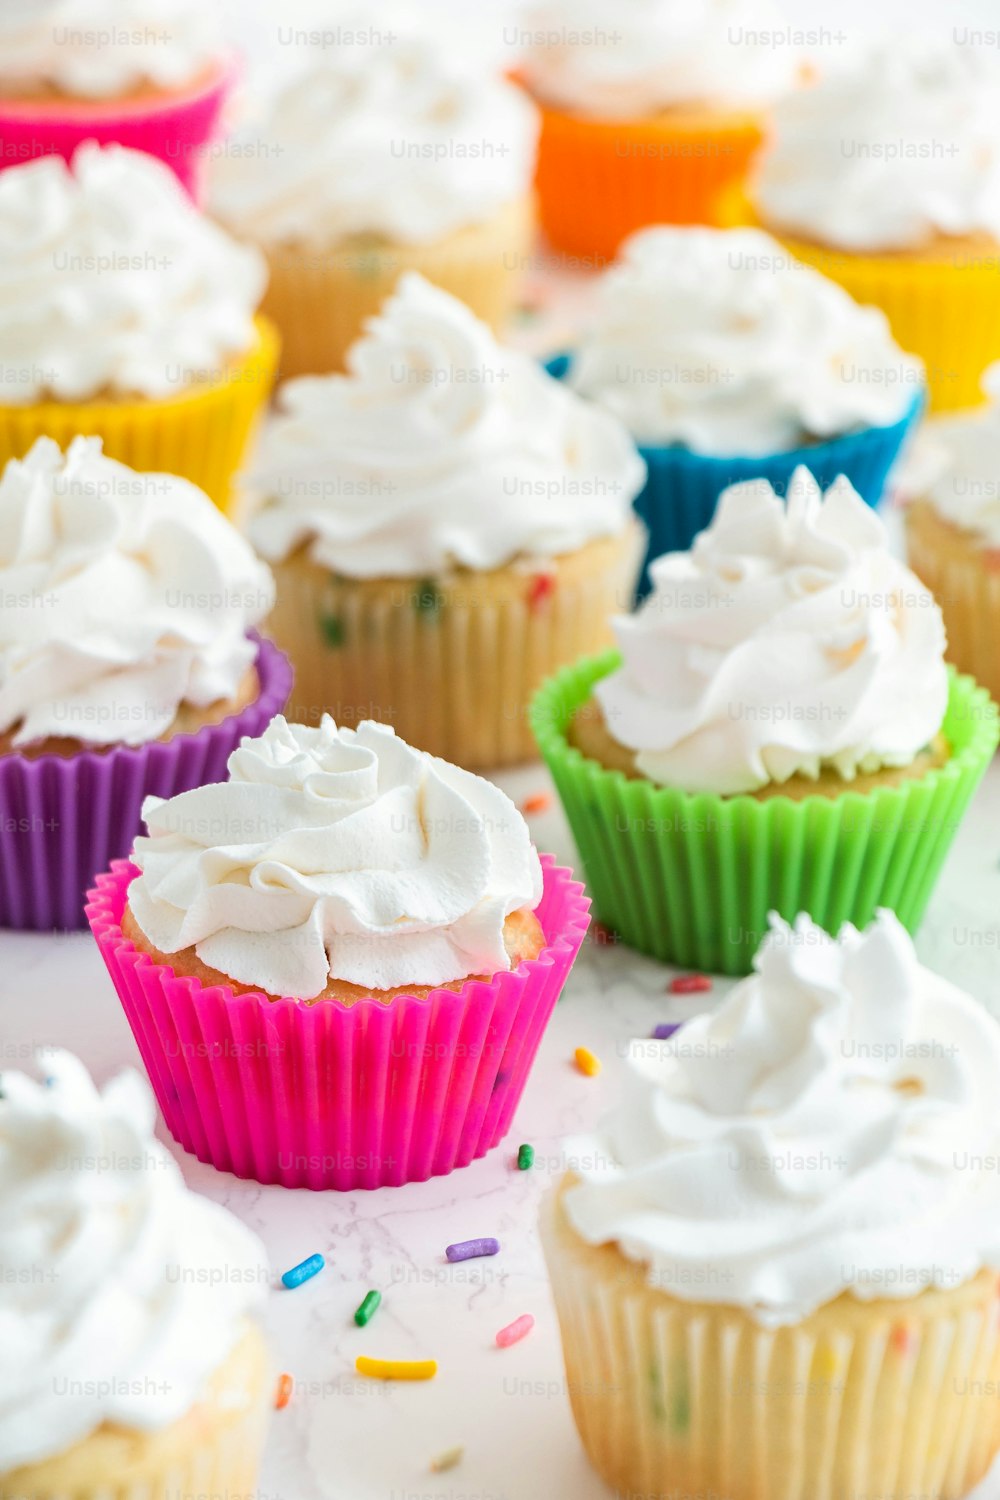 cupcakes con glaseado blanco y espolvoreados sobre una mesa